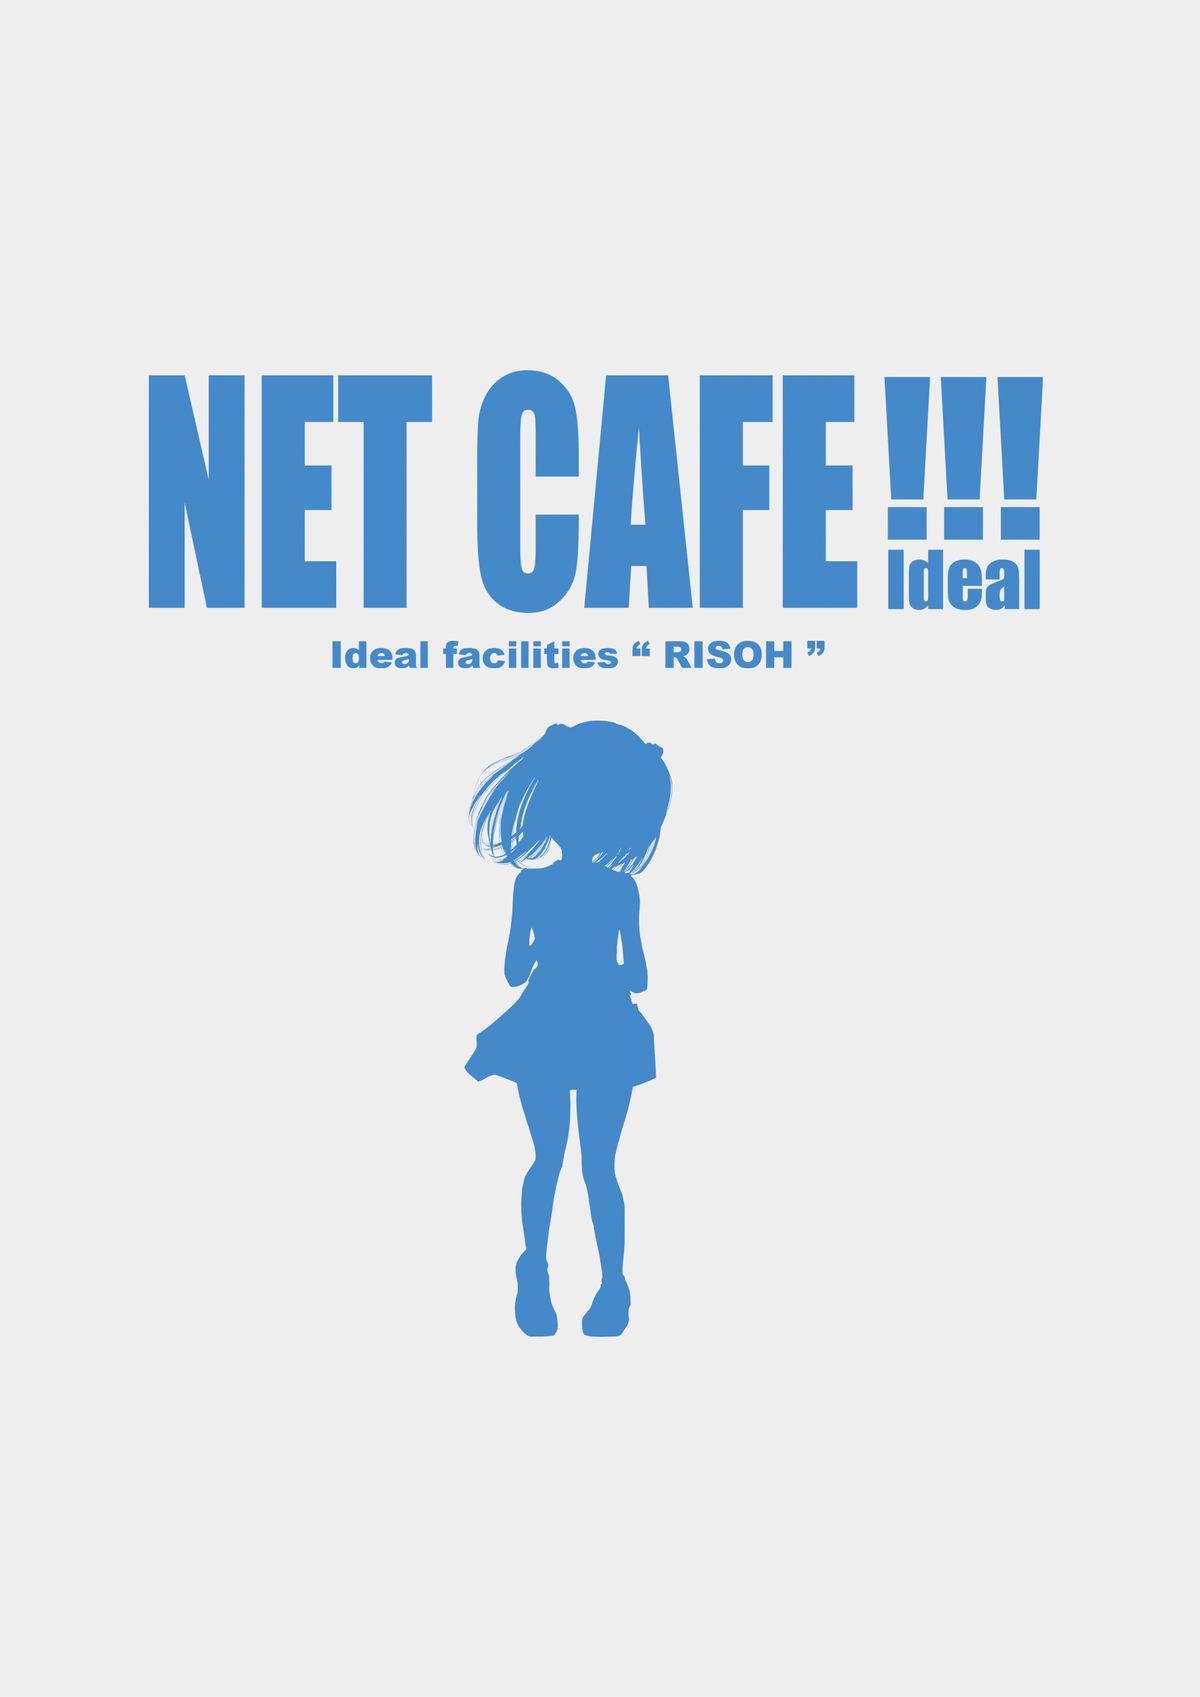 [禁断童話 (朋まや)] NET CAFE!!! [DL版]